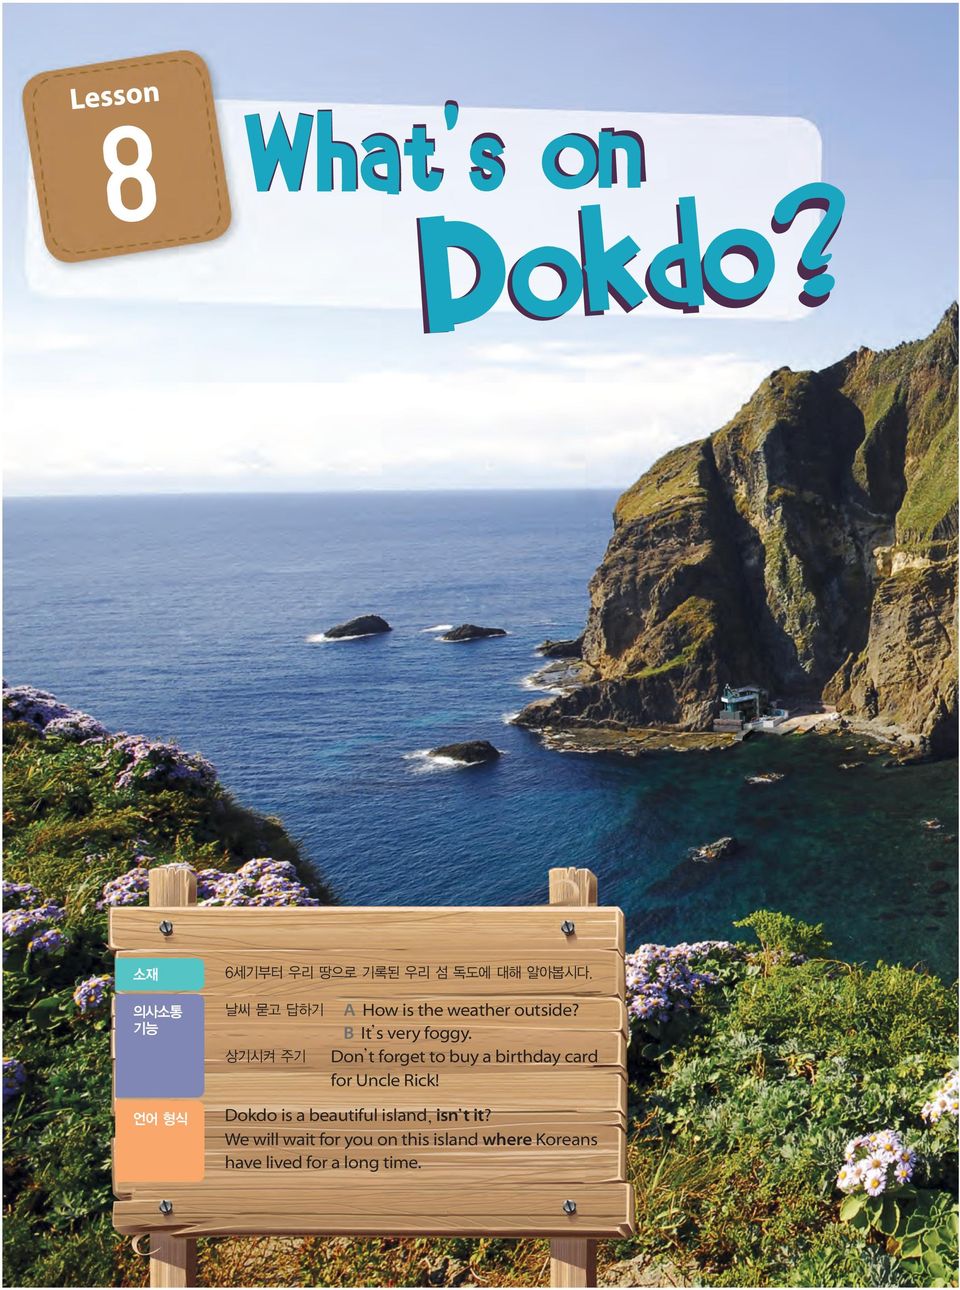 Dokdo is a beautiful island isn t it?